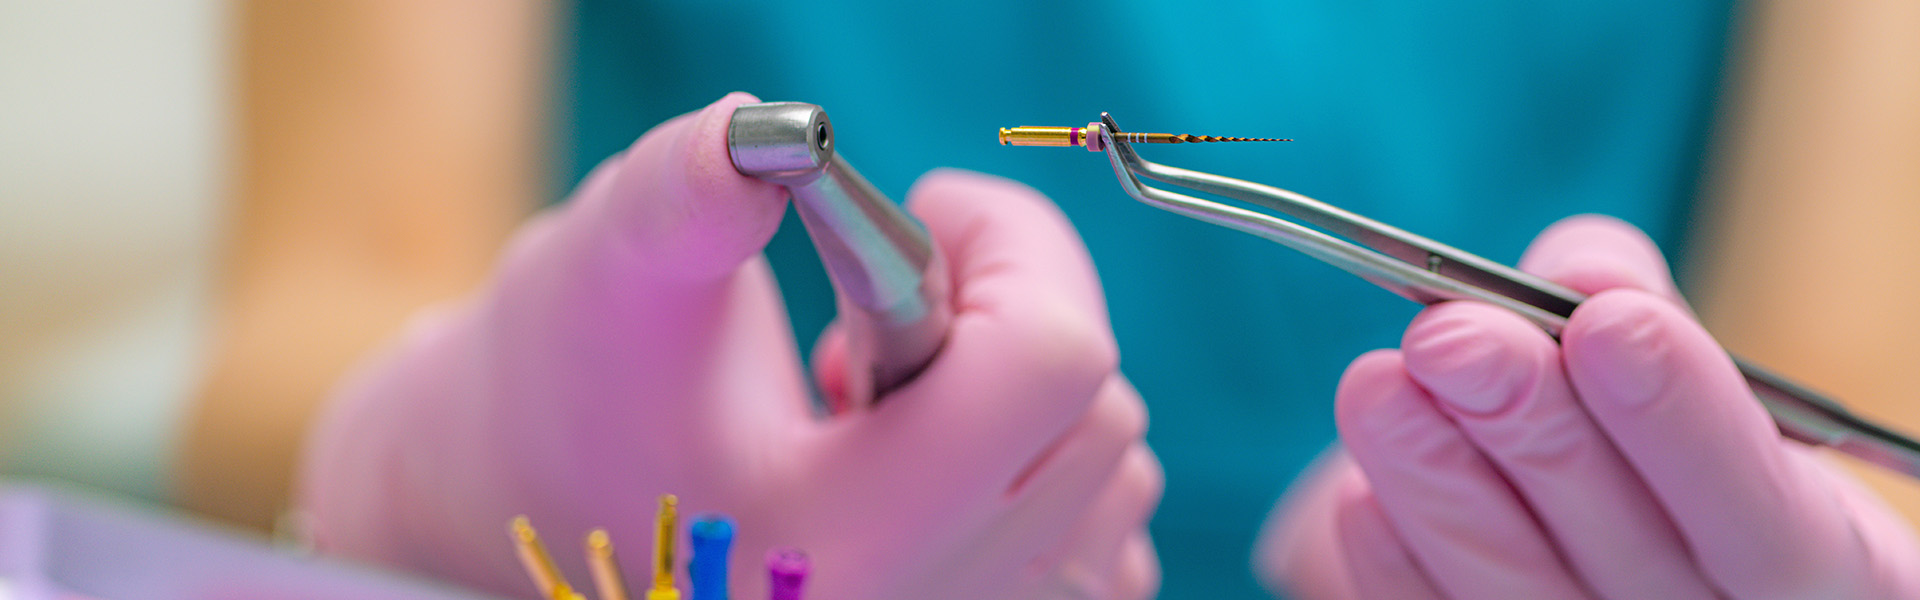 Detailaufnahme von Behandlungsinstrumenten für eine Wurzelbehandlung in der Zahnarztpraxis Emma Klein in Rastede